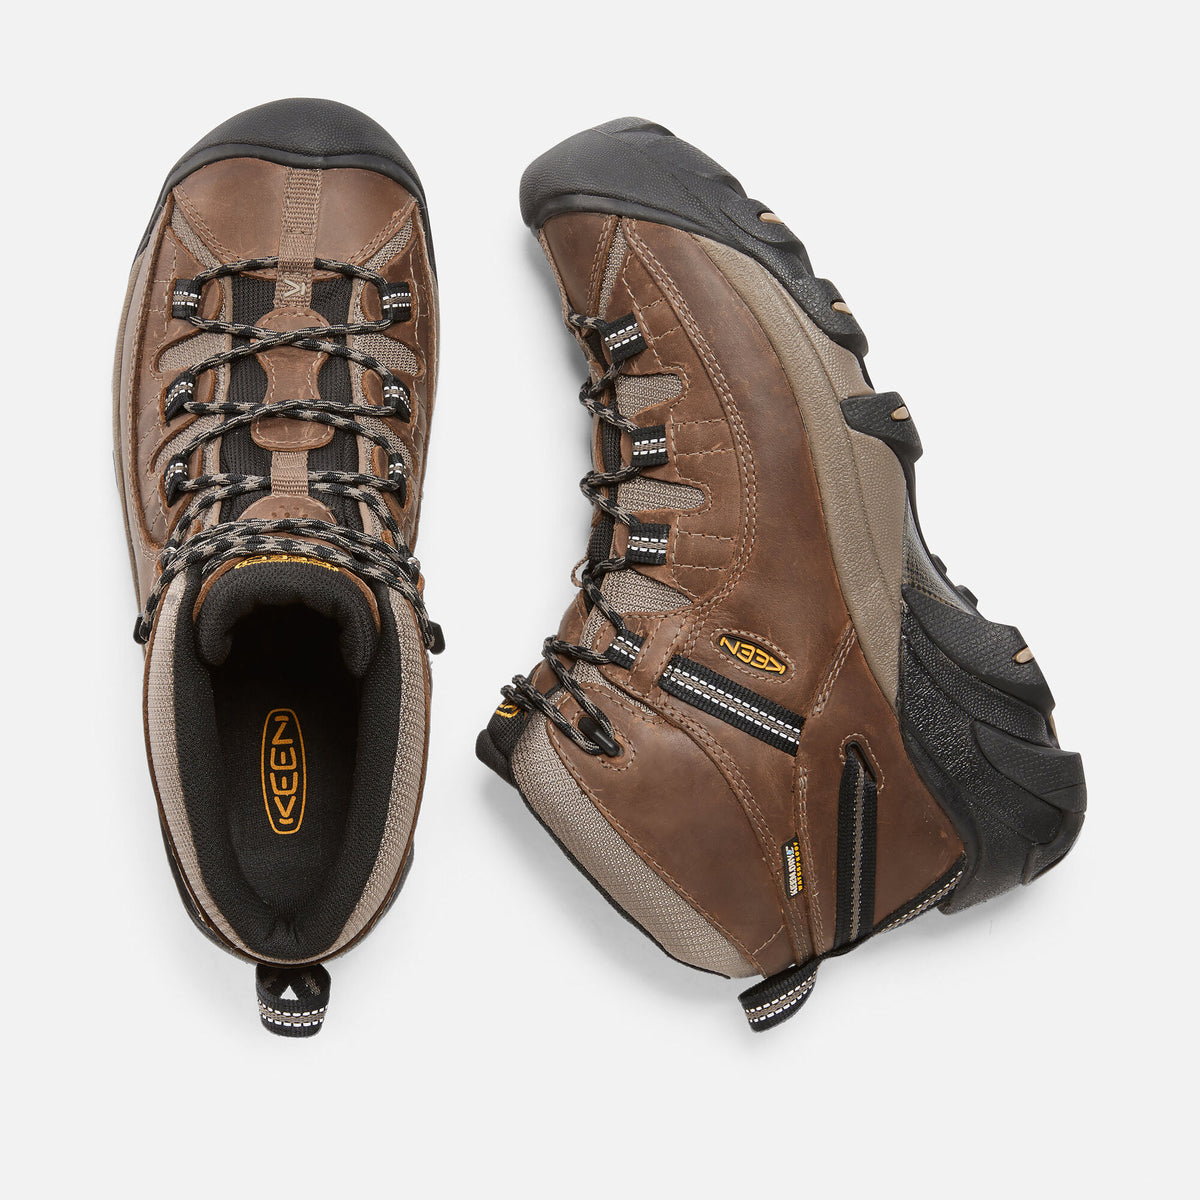 Keen Men's Targhee II Mid Waterproof Hiking Boot - Shitake/Brindle 100 ...